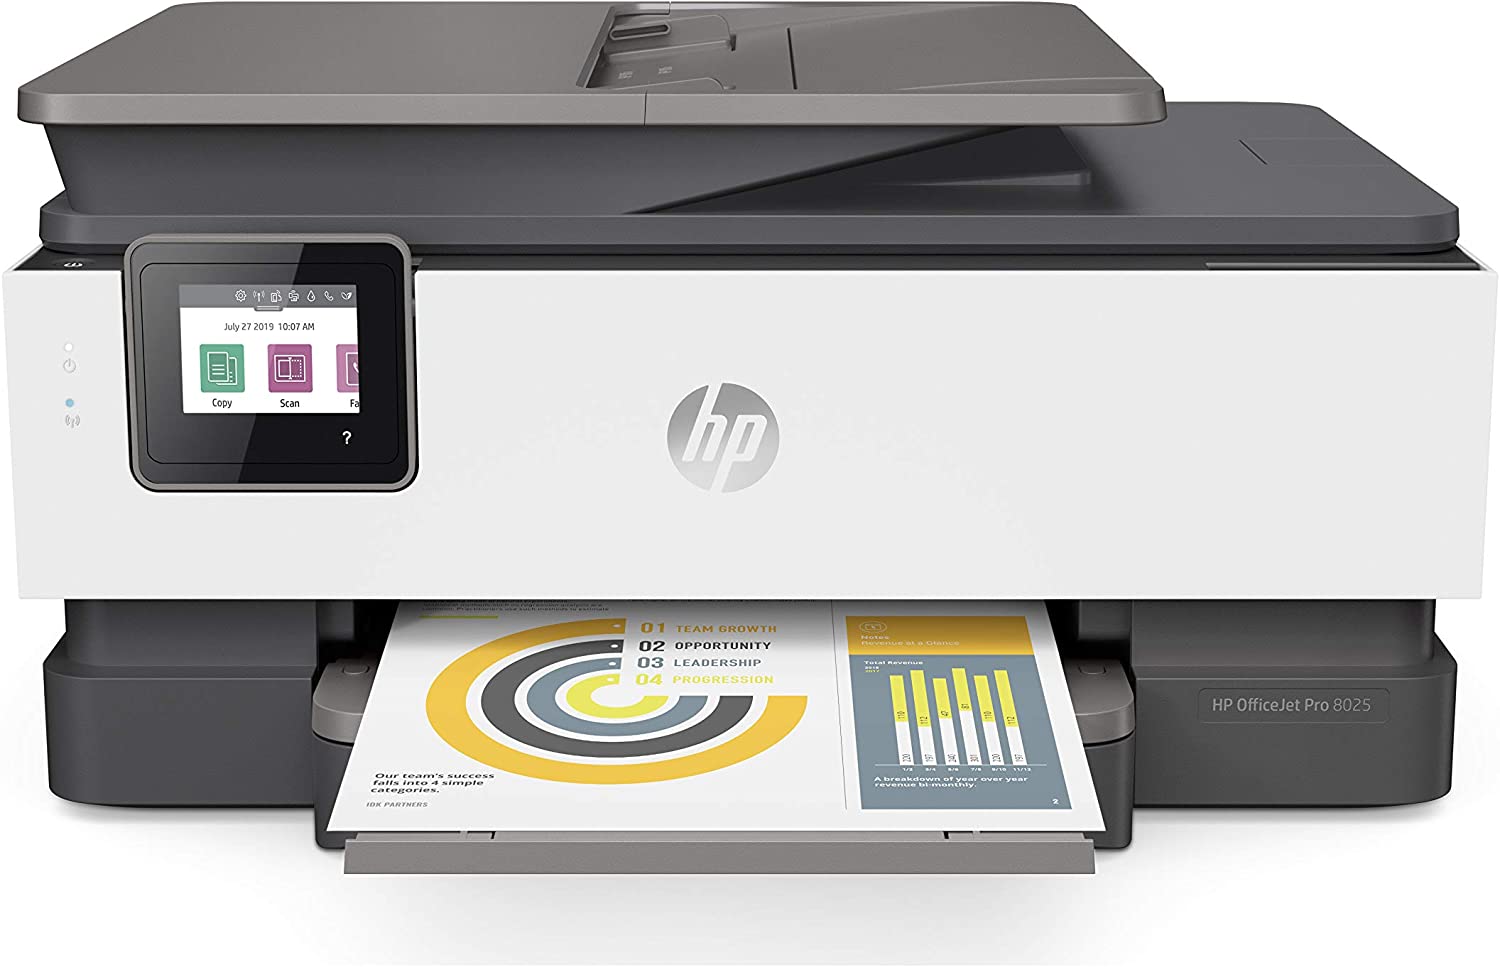 HP OfficeJet Pro 8025 All-In-One Wireless Printer